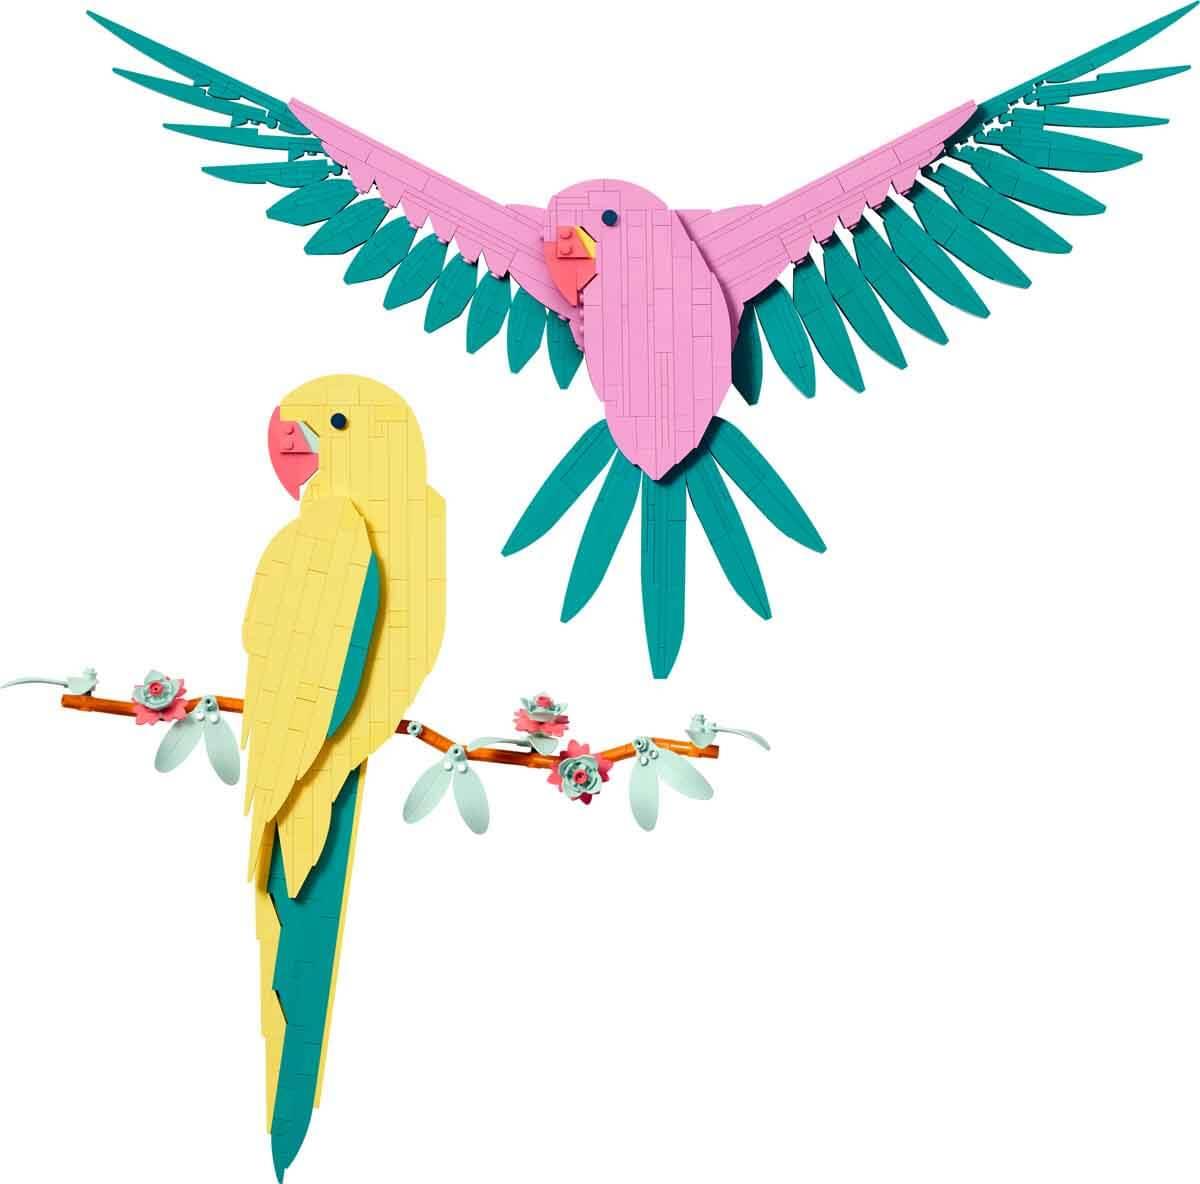 Lego Art Fauna Koleksiyonu - Macaw Papağanları 31211 | Toysall